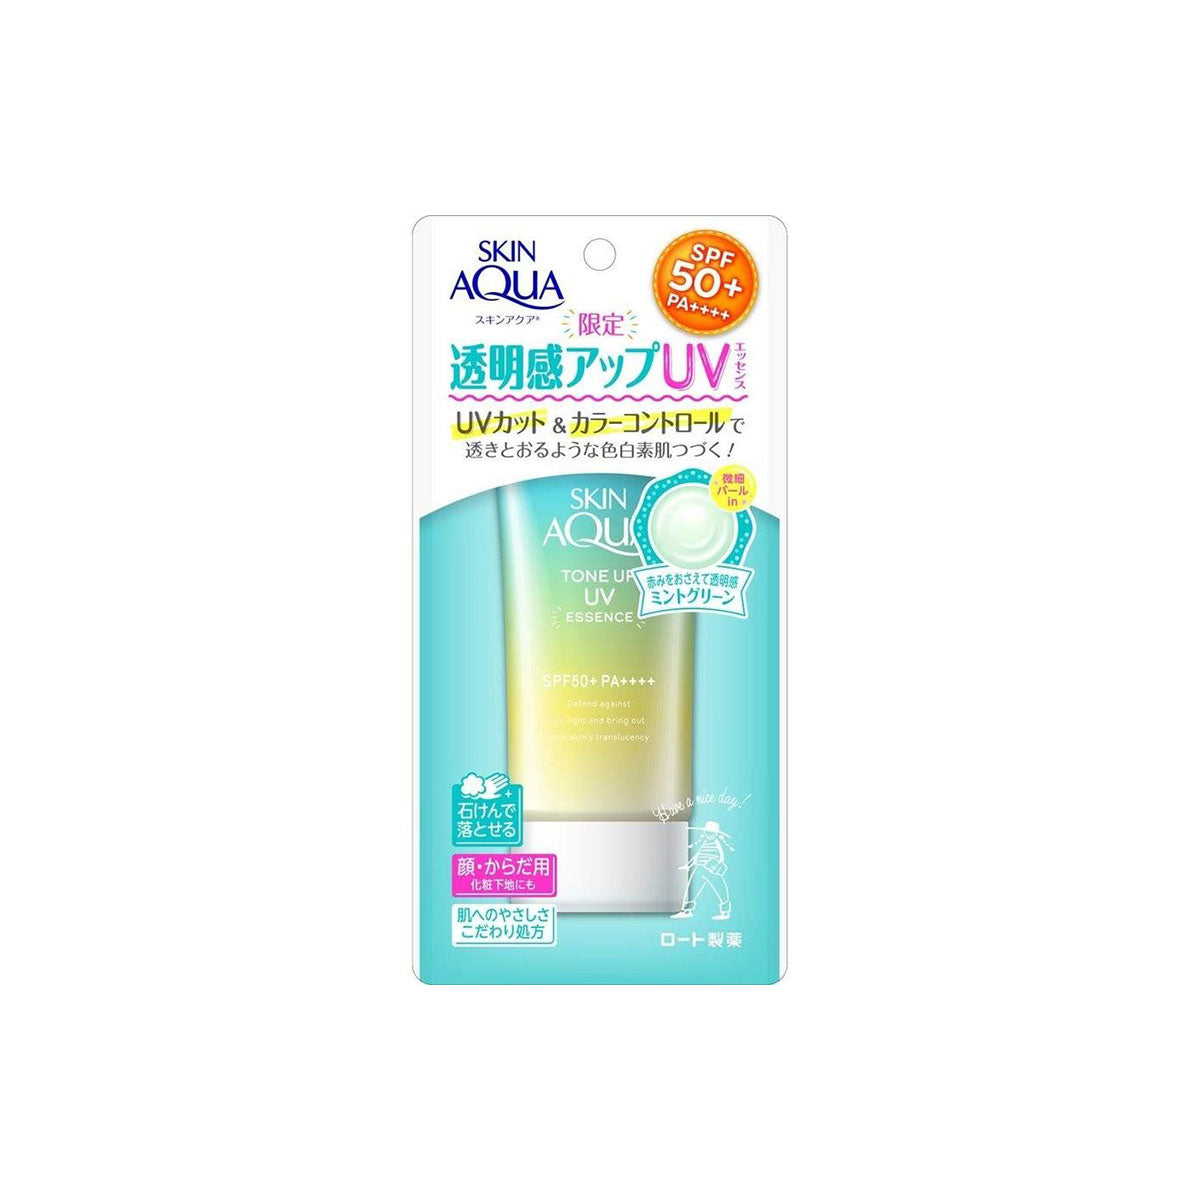 Skin Aqua Tone Up UV Essence Mint Green SPF50 + / PA ++++ 80g